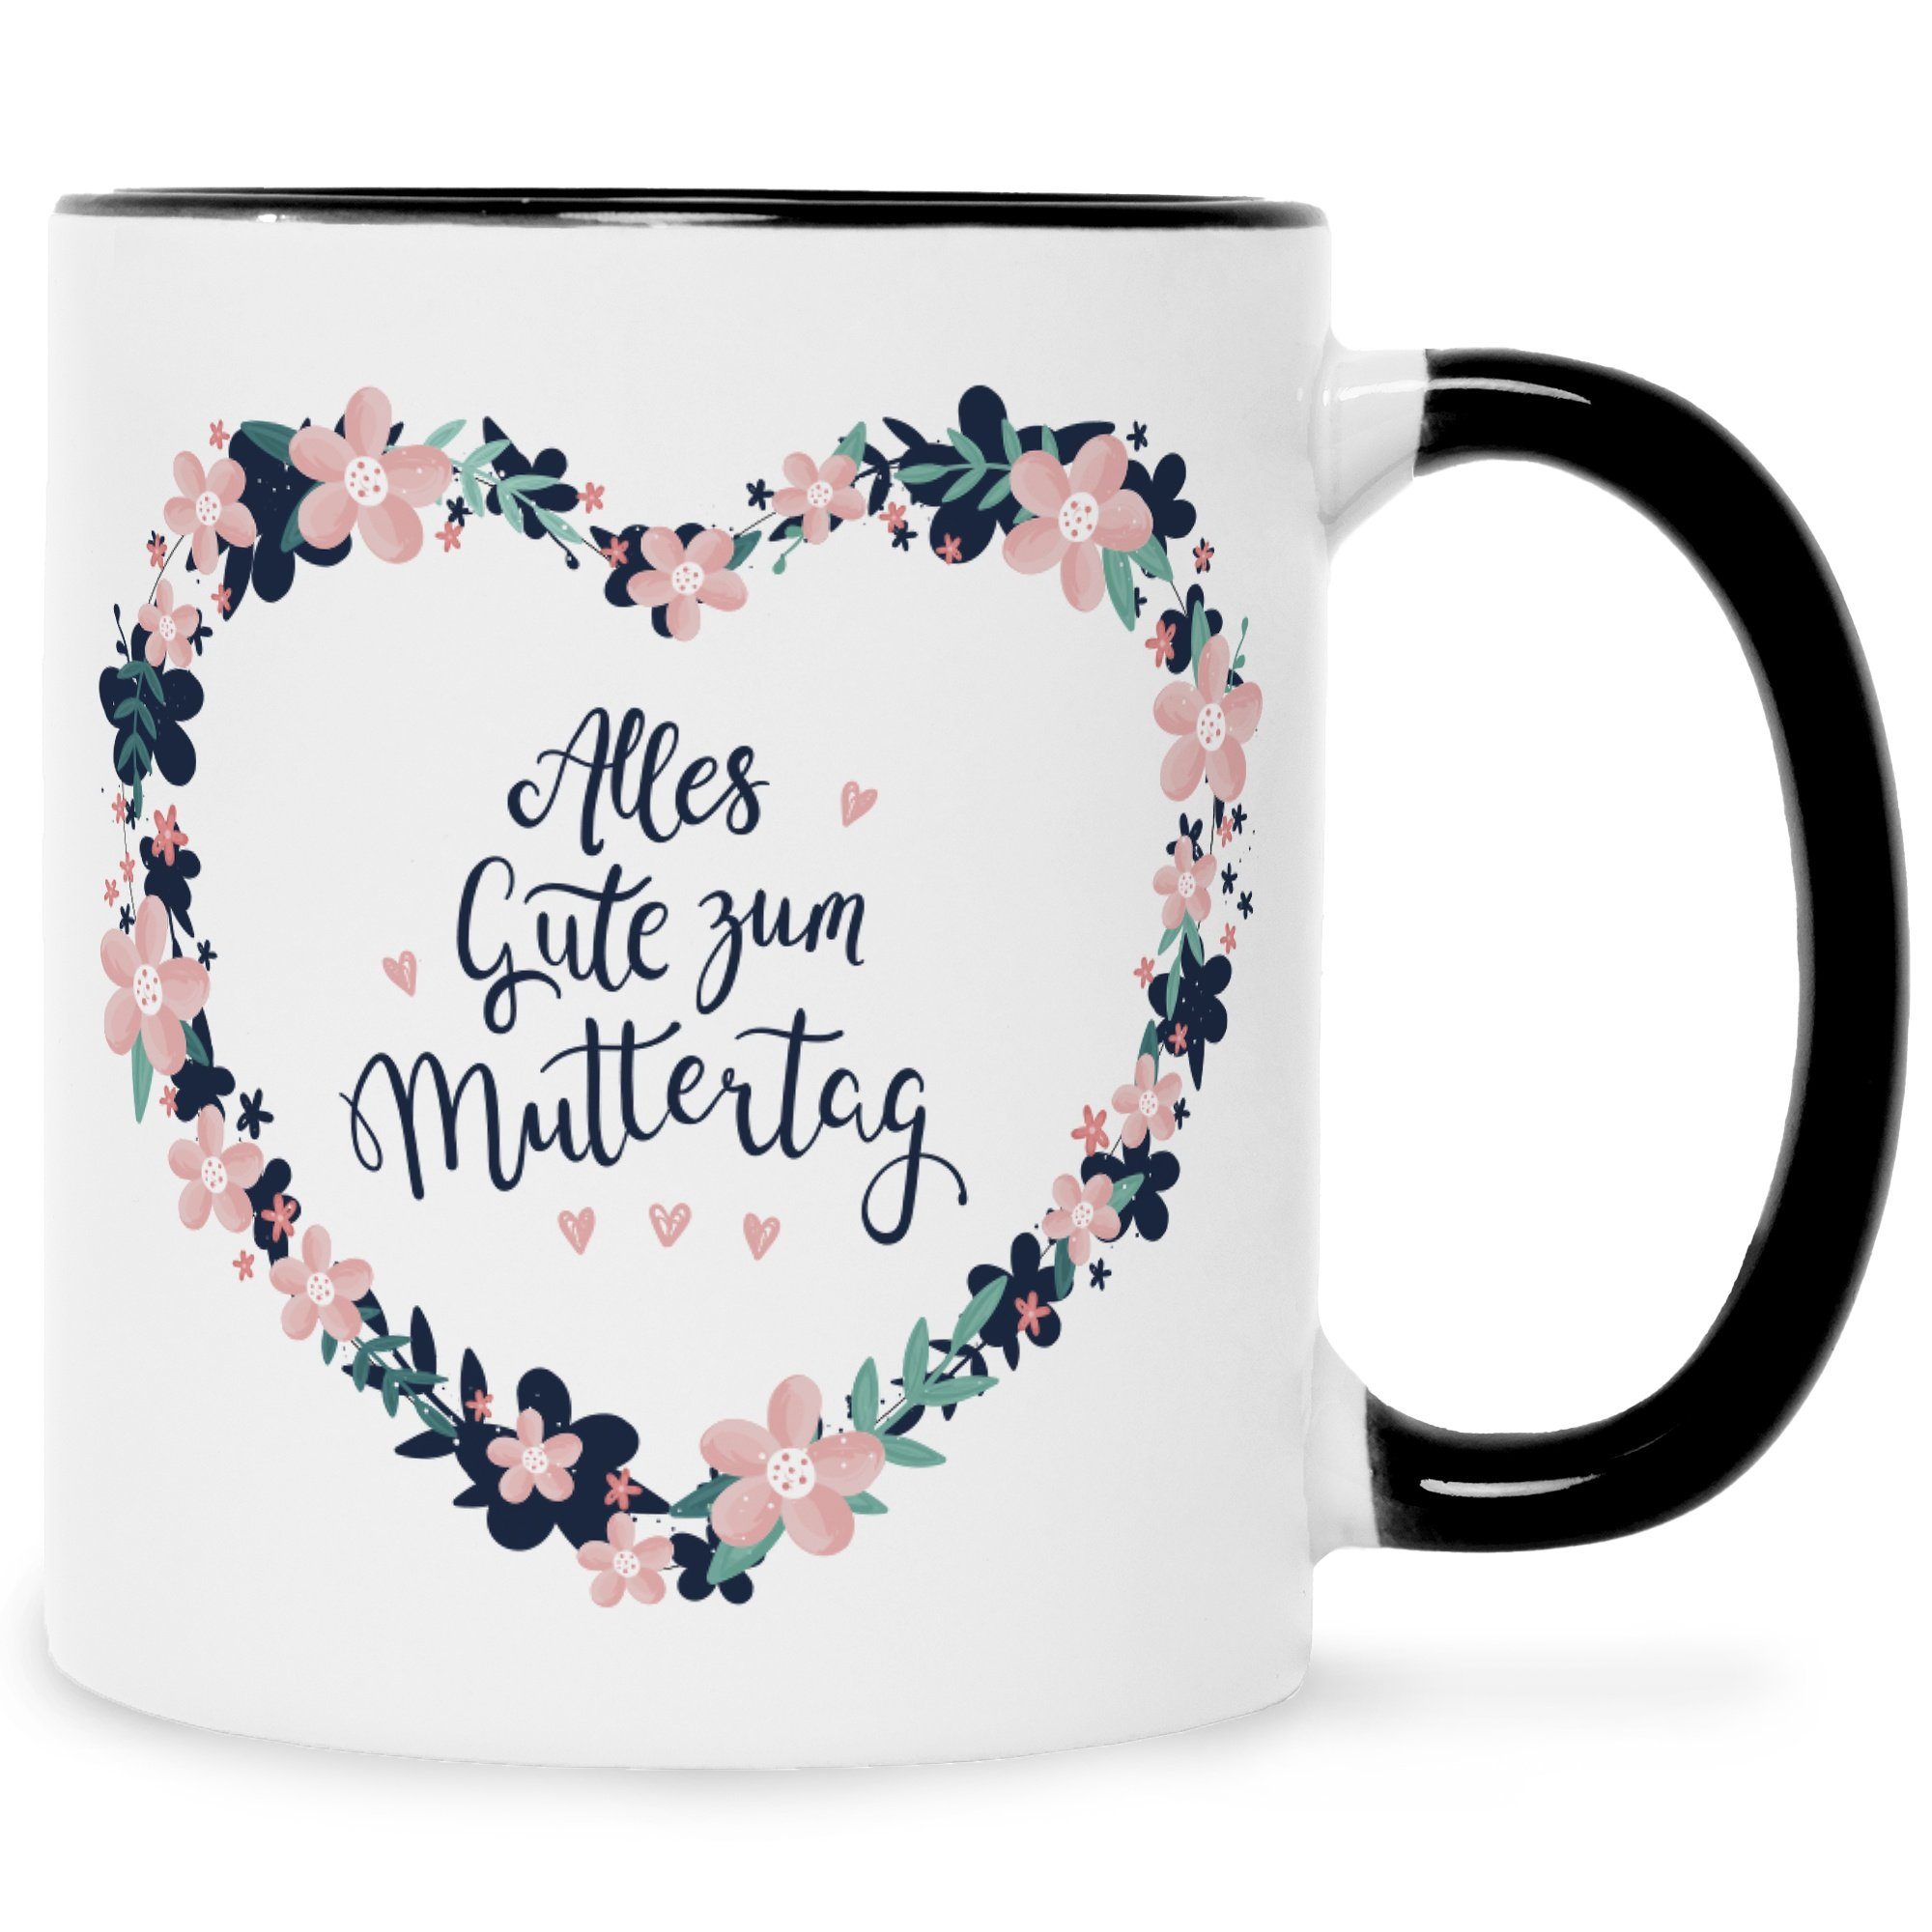 GRAVURZEILE Tasse Bedruckte Tasse mit Spruch - Alles gute zum Muttertag, Keramik, bedrucktes Geschenk für Mama zum Muttertag Schwarz Weiß